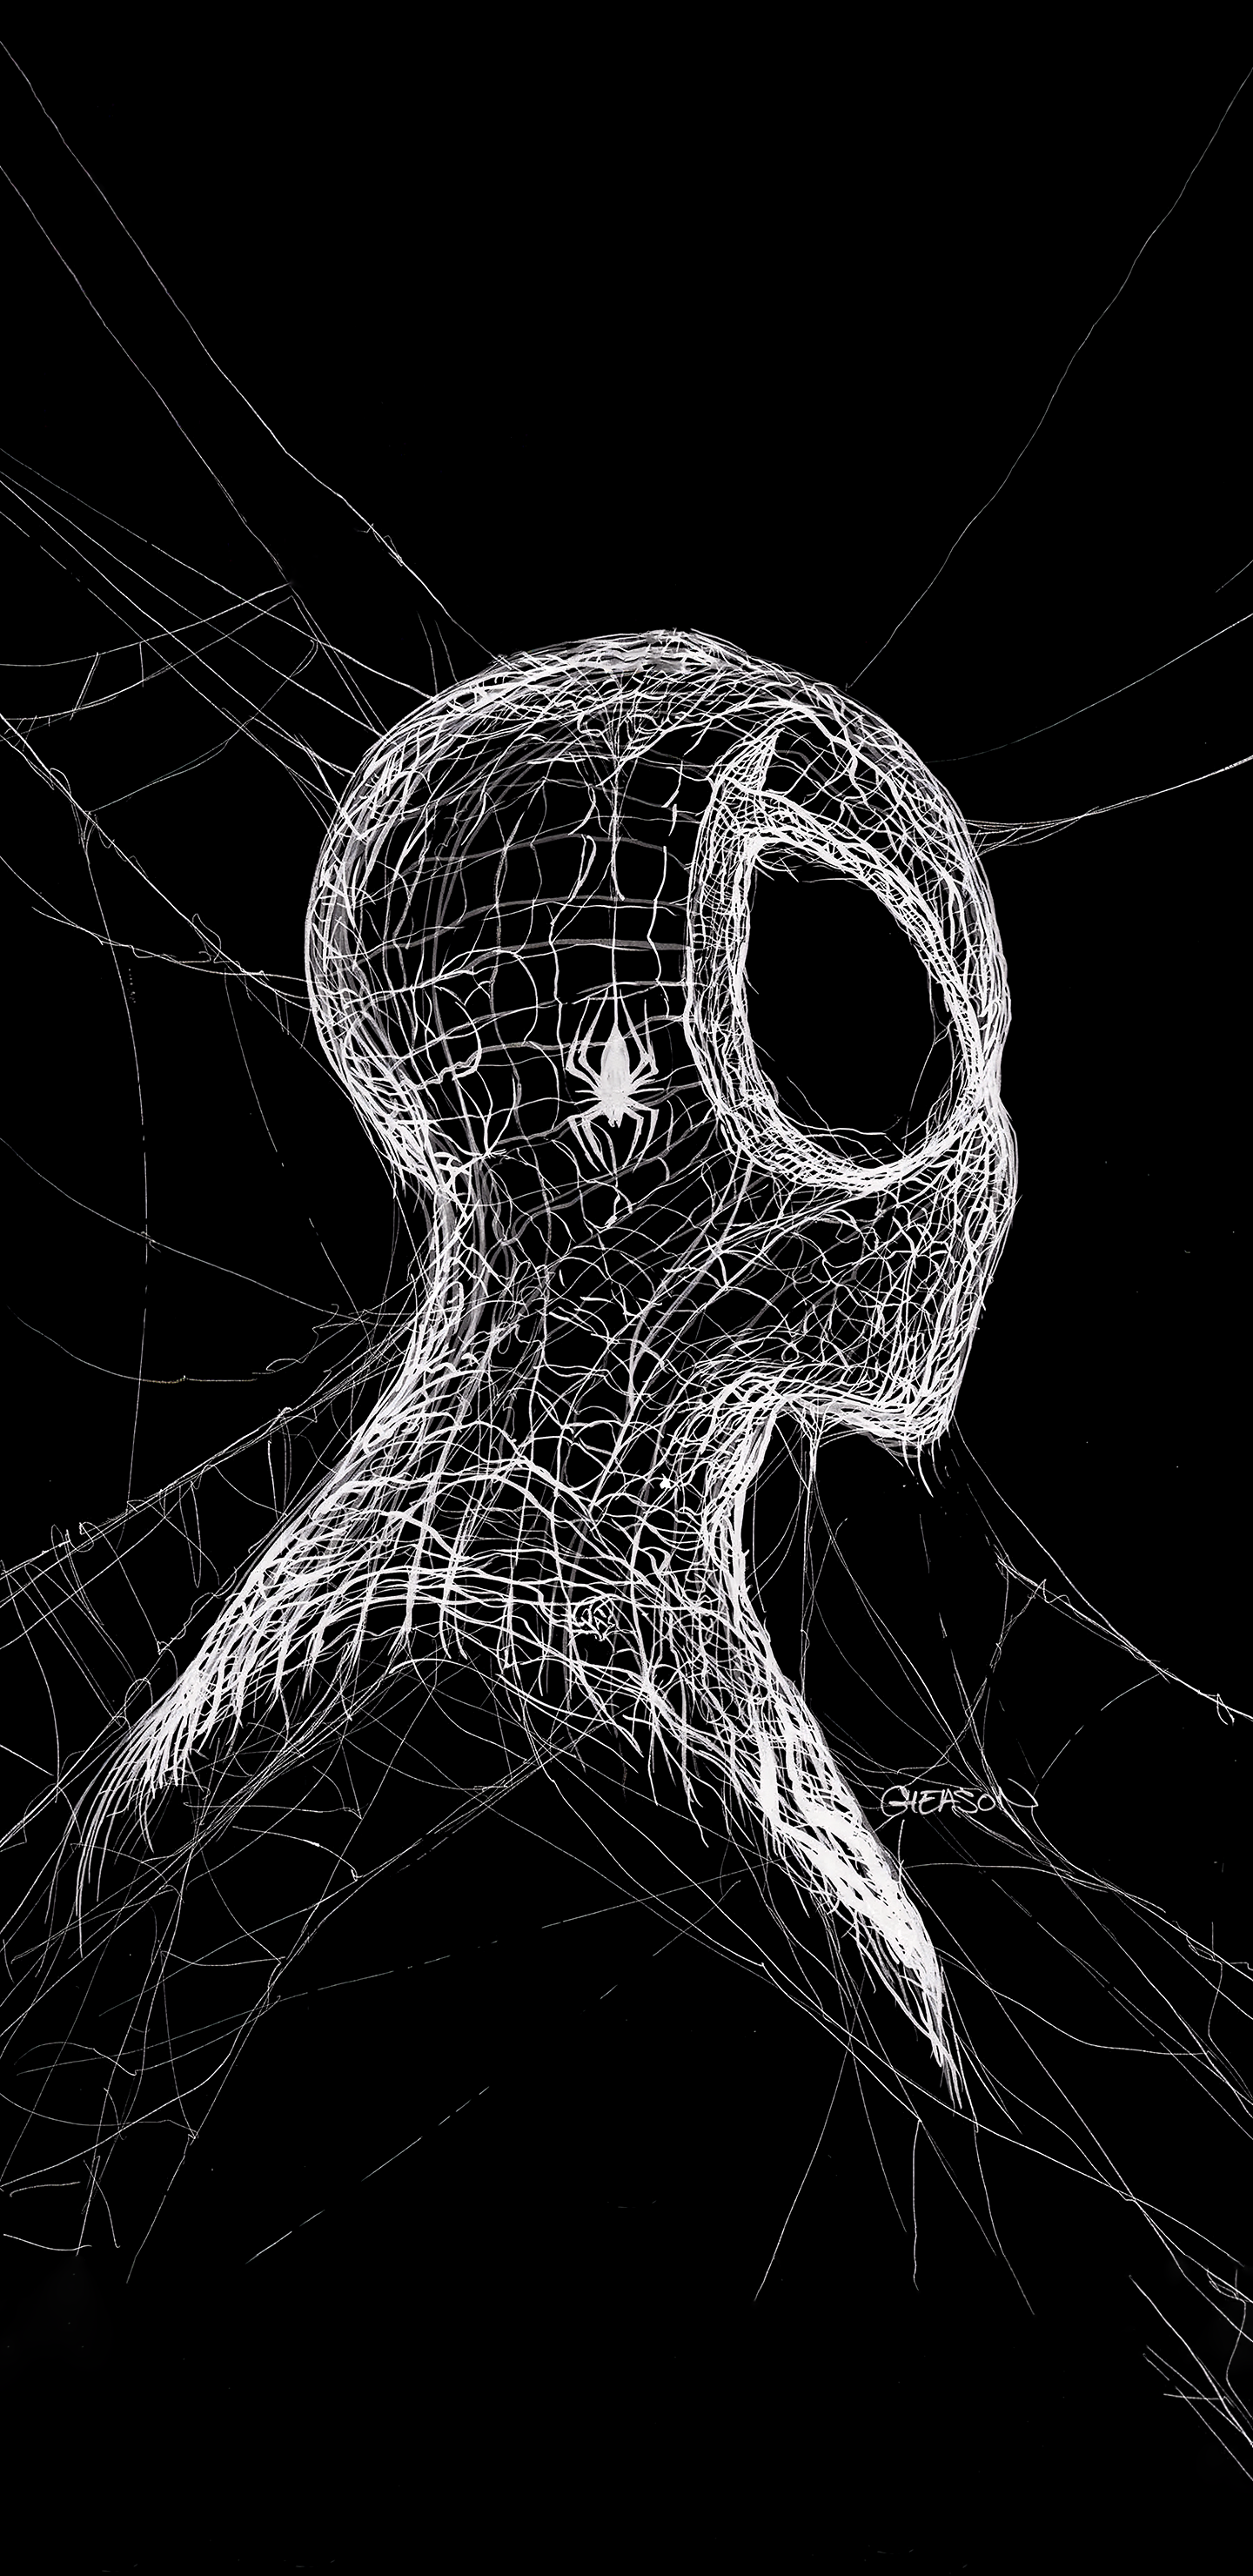 Wallpaper, dark, superhero, vertical, Spider Man 1440x2960